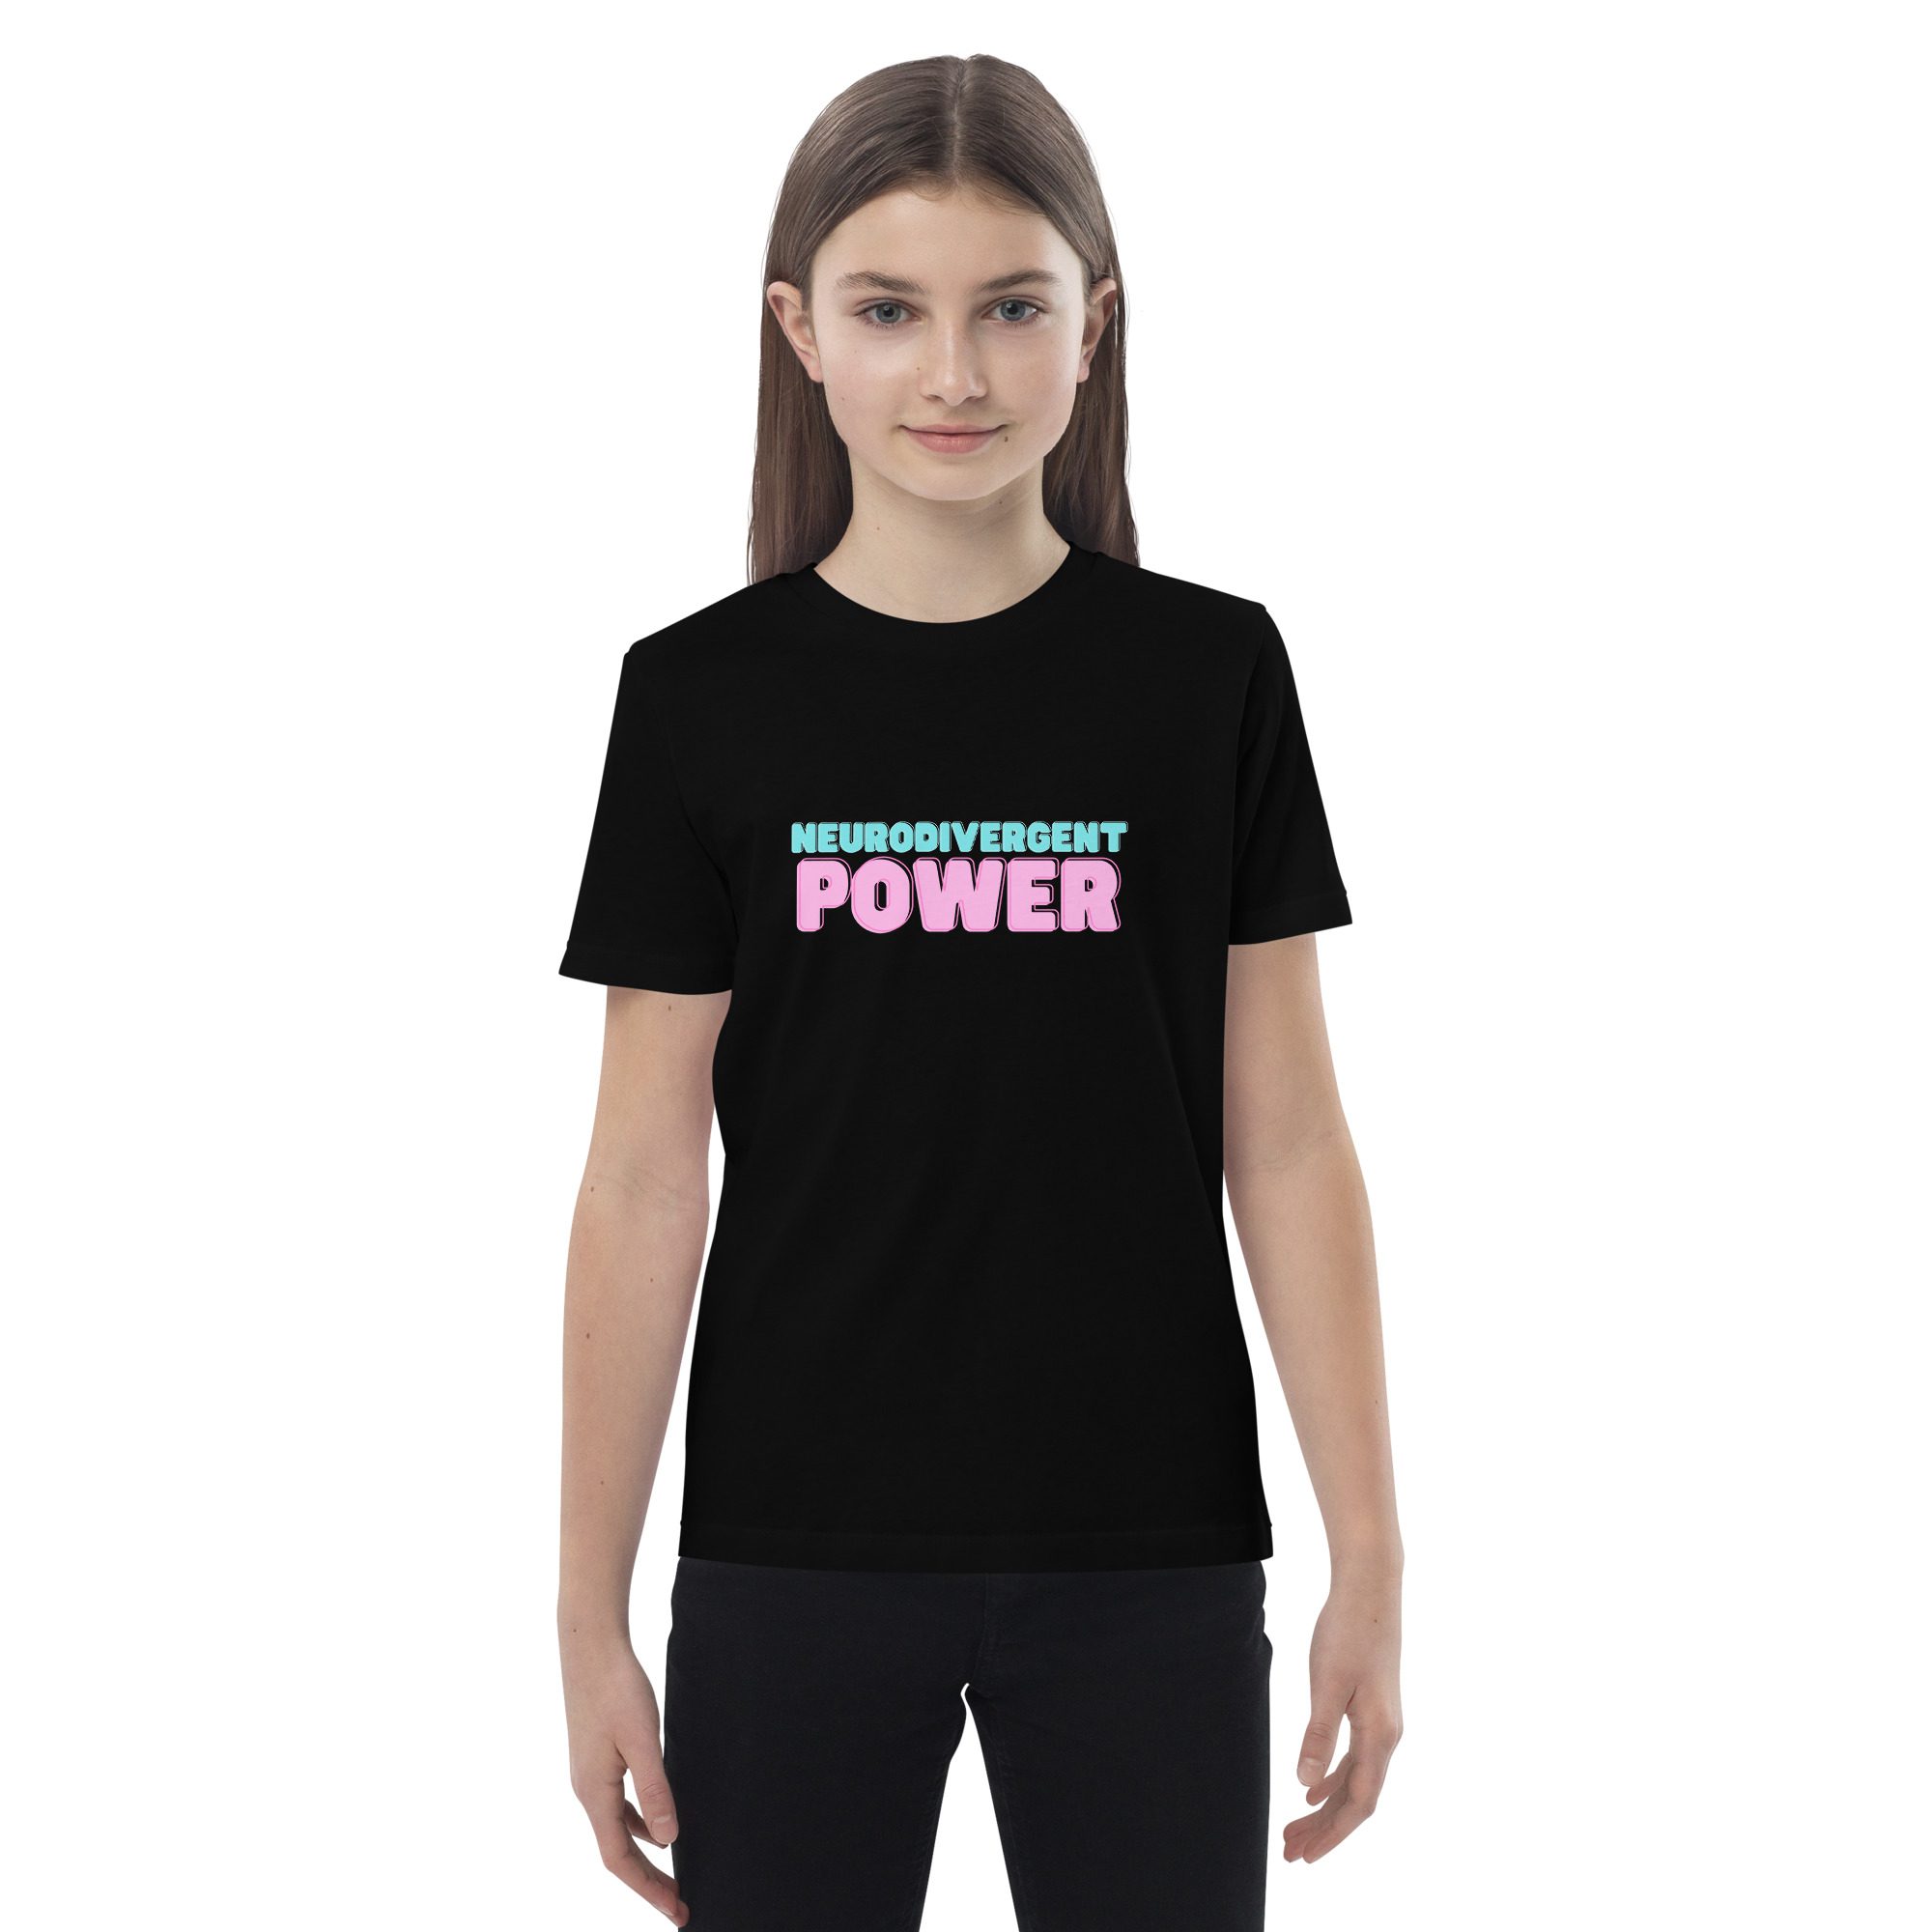 Neurodivergent Power Organic Cotton Kids T-shirt